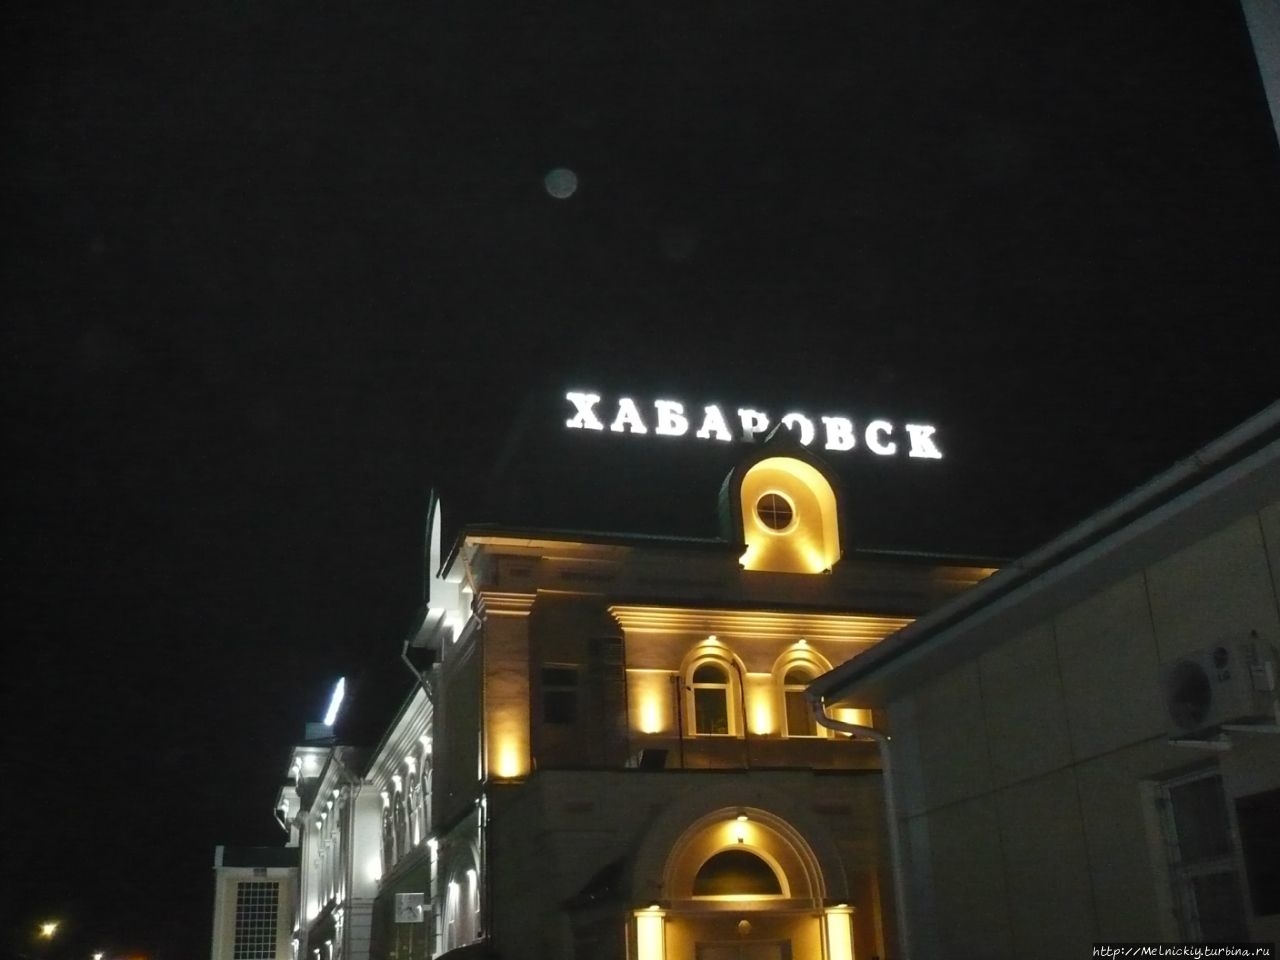 Хабаровск – город русских первопроходцев